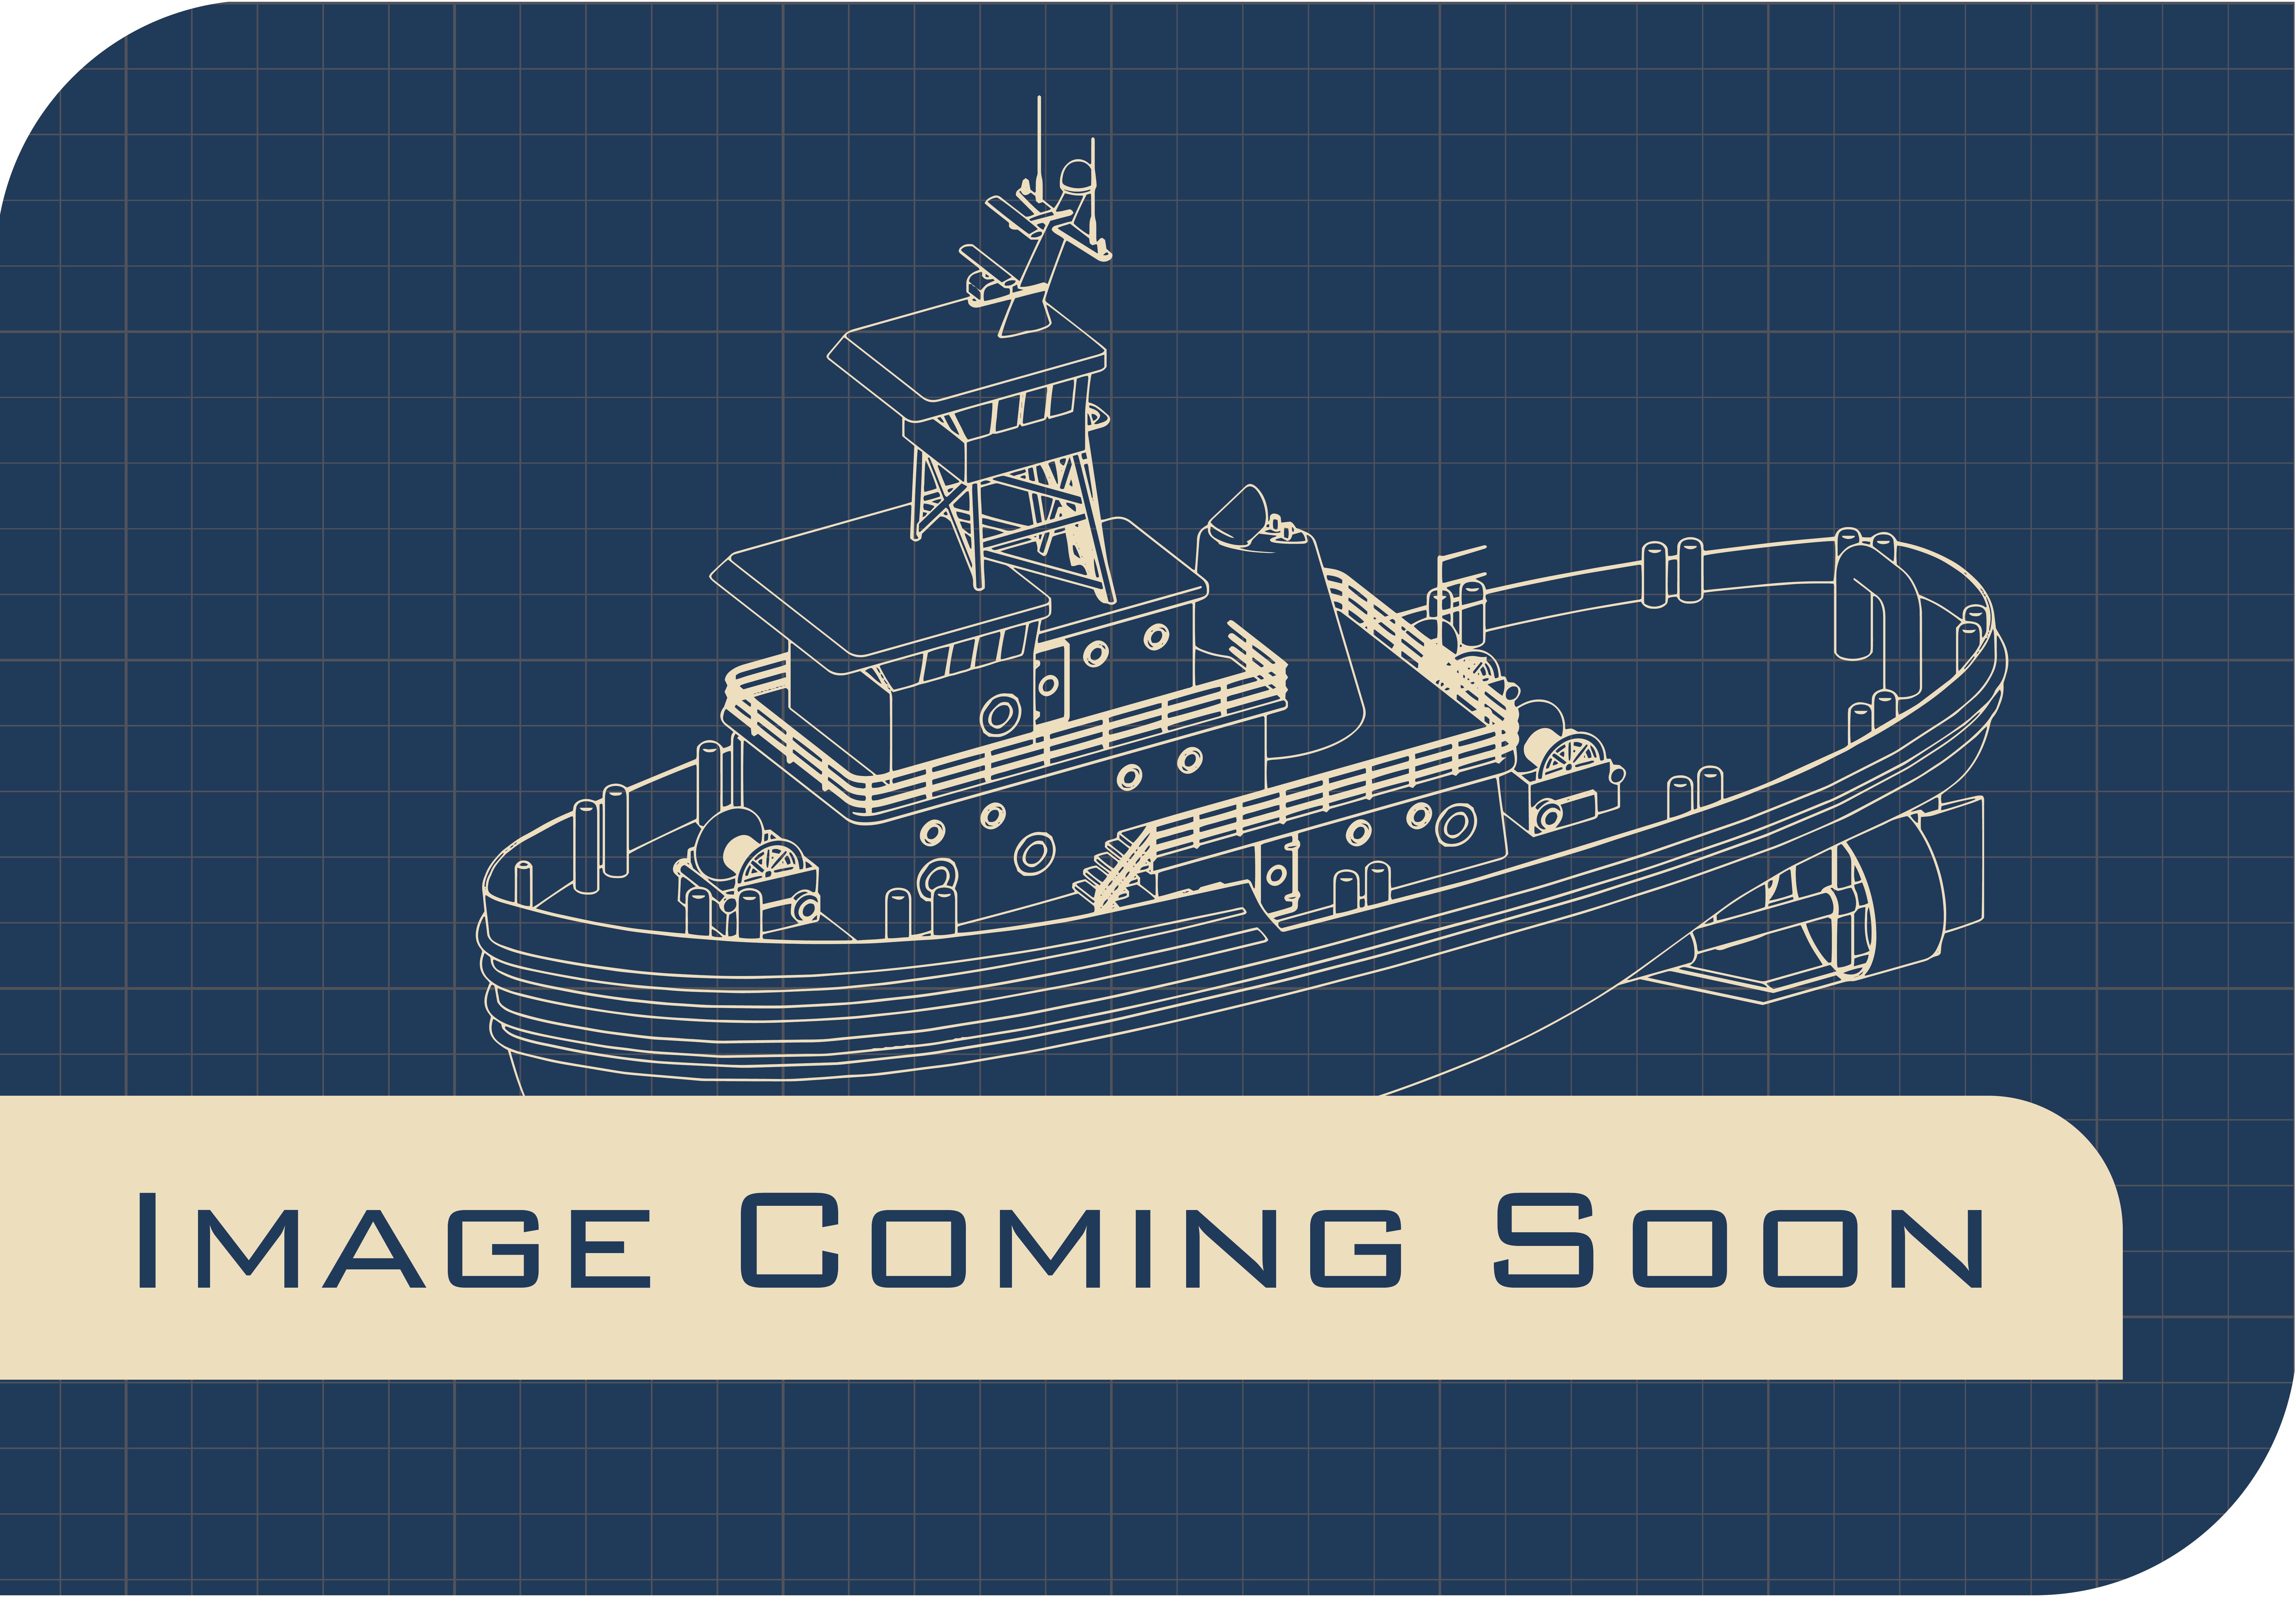 Rental Boat Placeholder Image - Tugboat-02